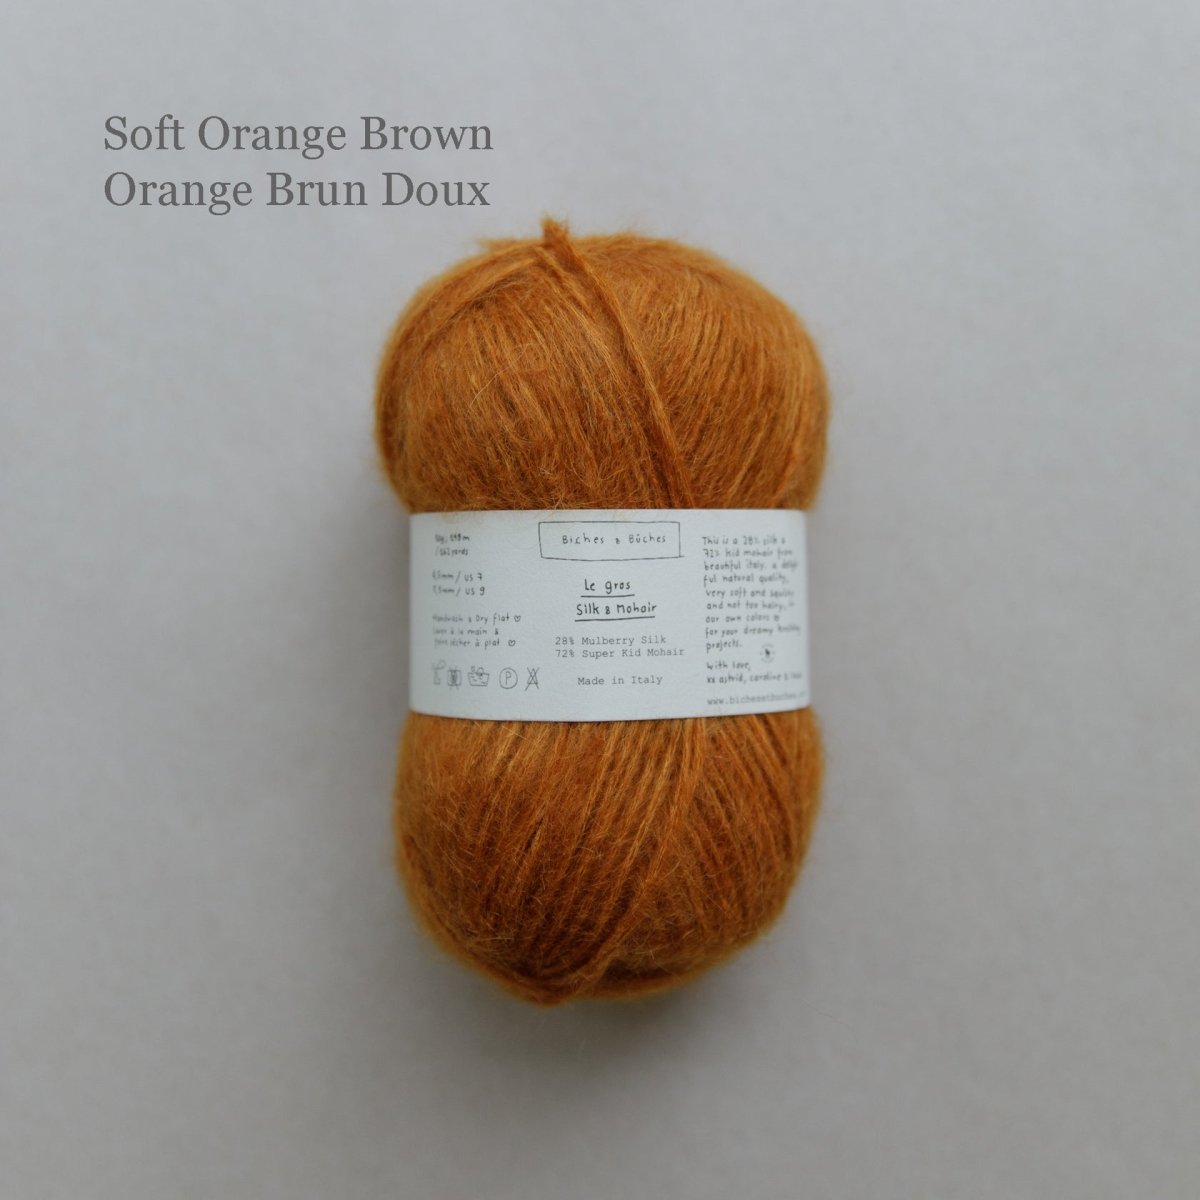 le gros silk & mohair - soft orange brown at Wabi Sabi